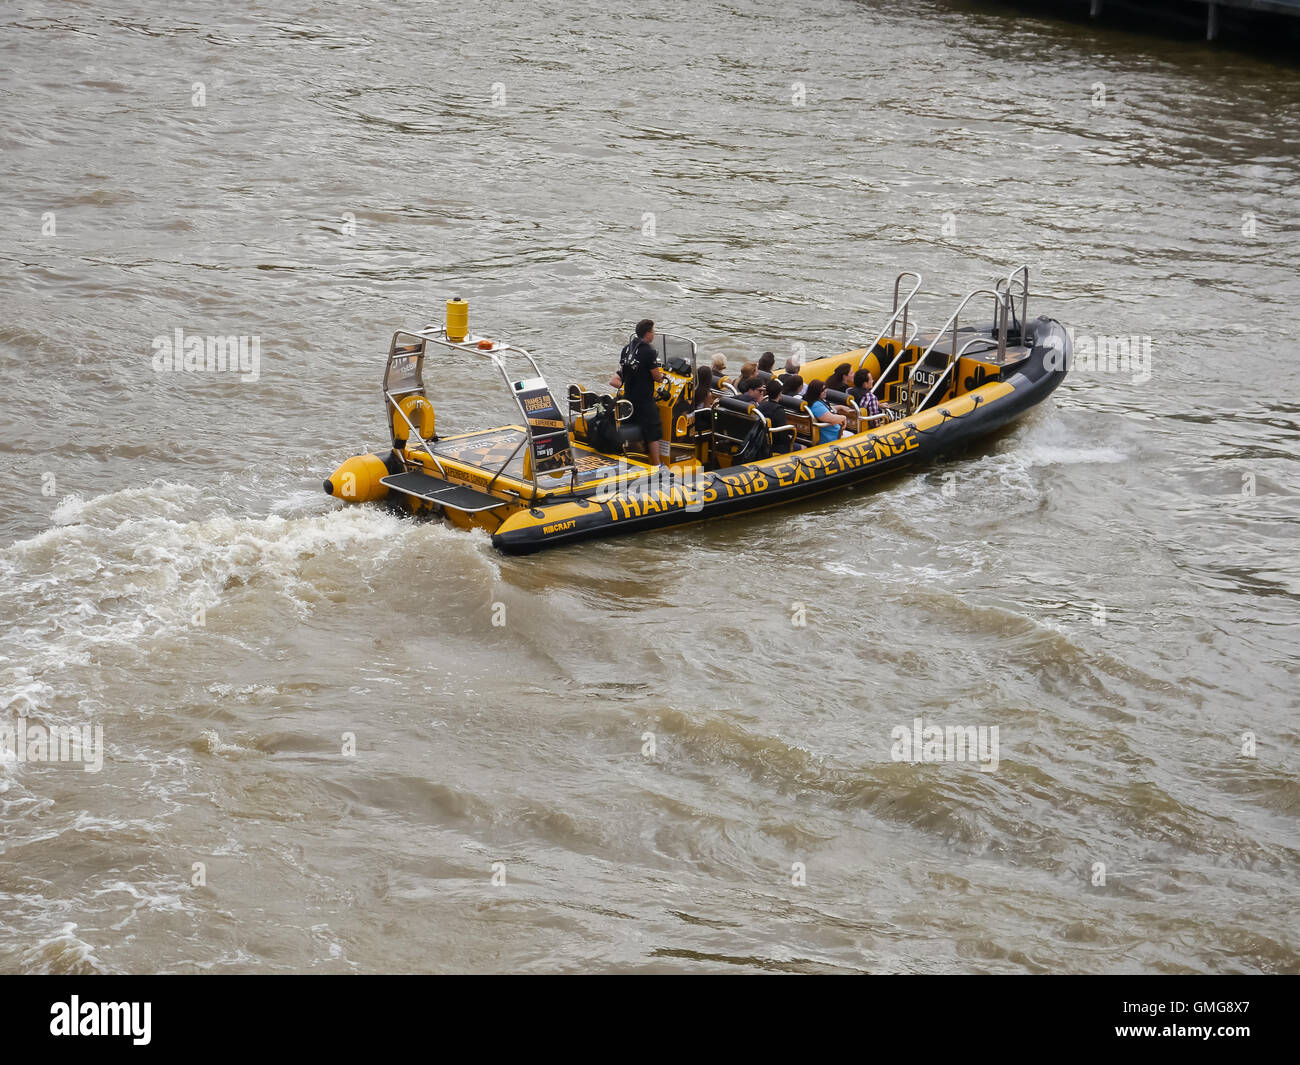 Una nervatura del "Thames costola esperienza' di prendere i turisti per un giro sul fiume Tamigi a Londra in Inghilterra Foto Stock